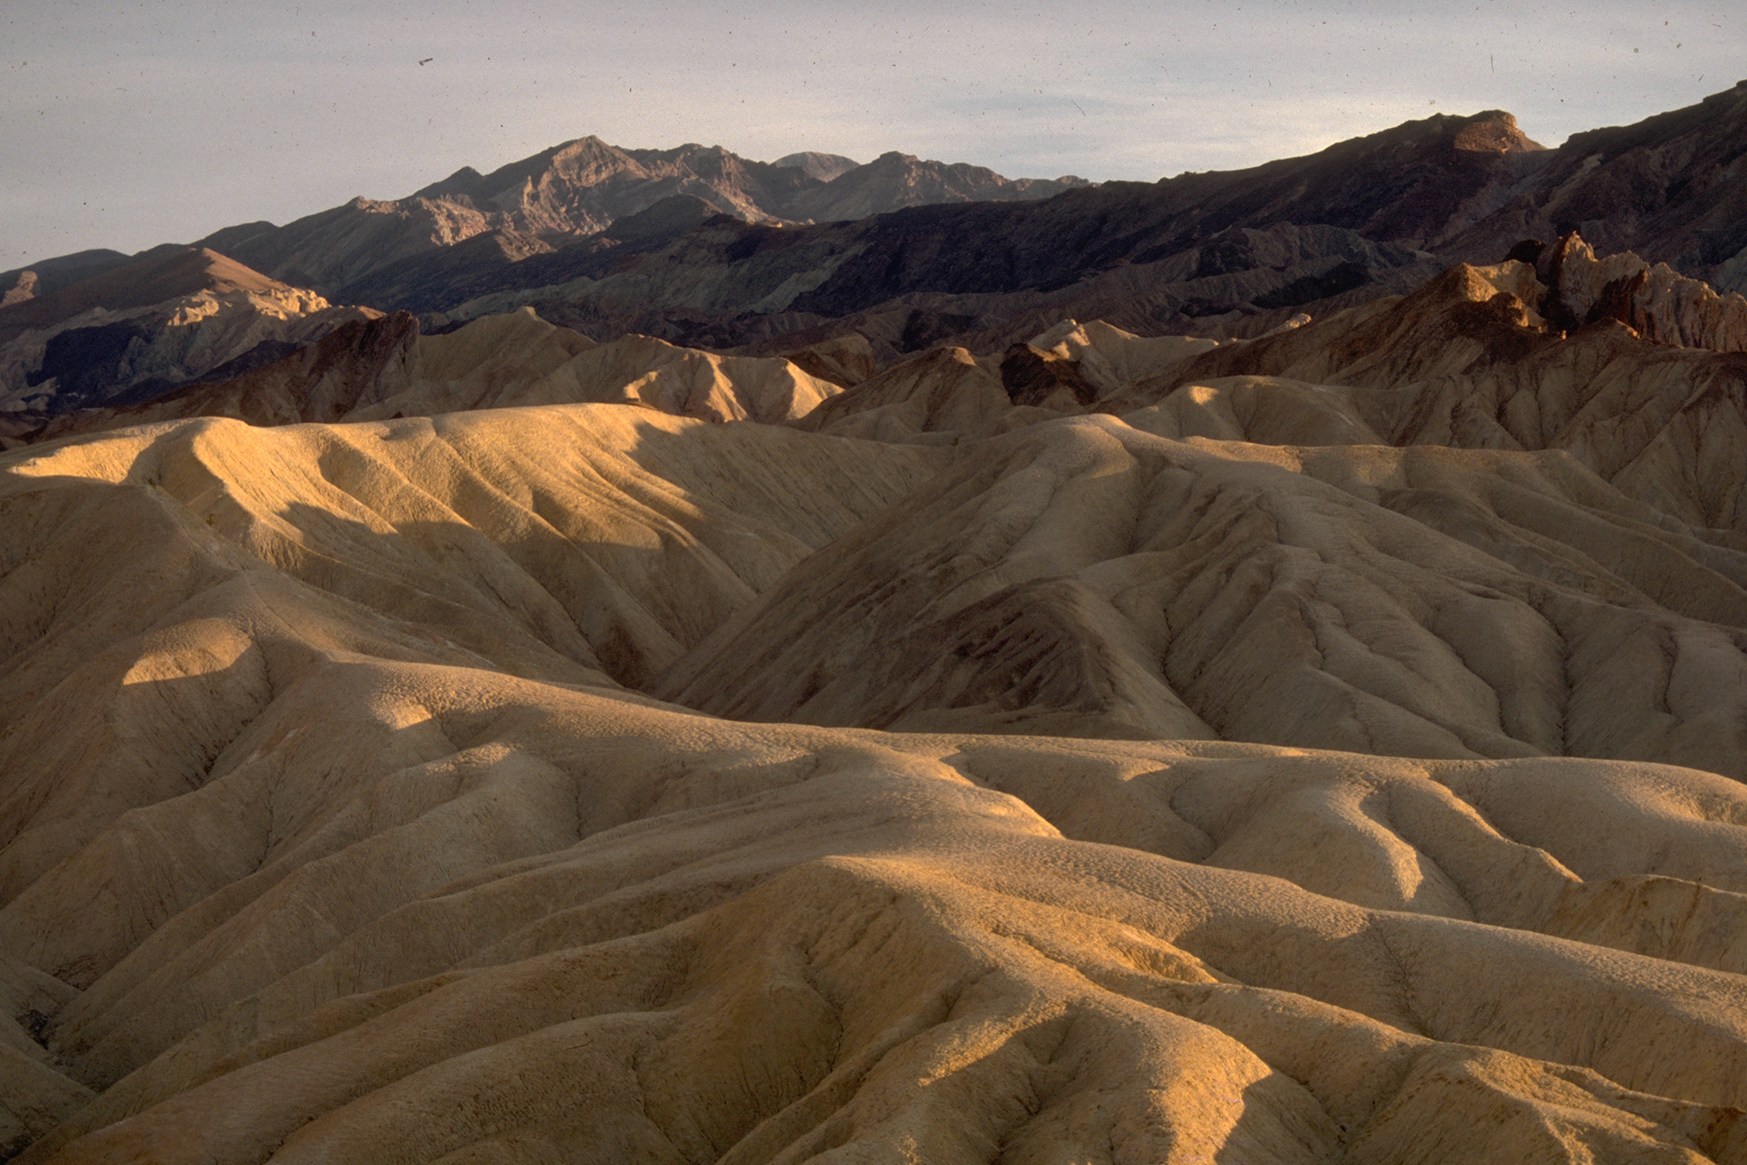 Desert Ridges at Zabriskie Point within Death Valley. 